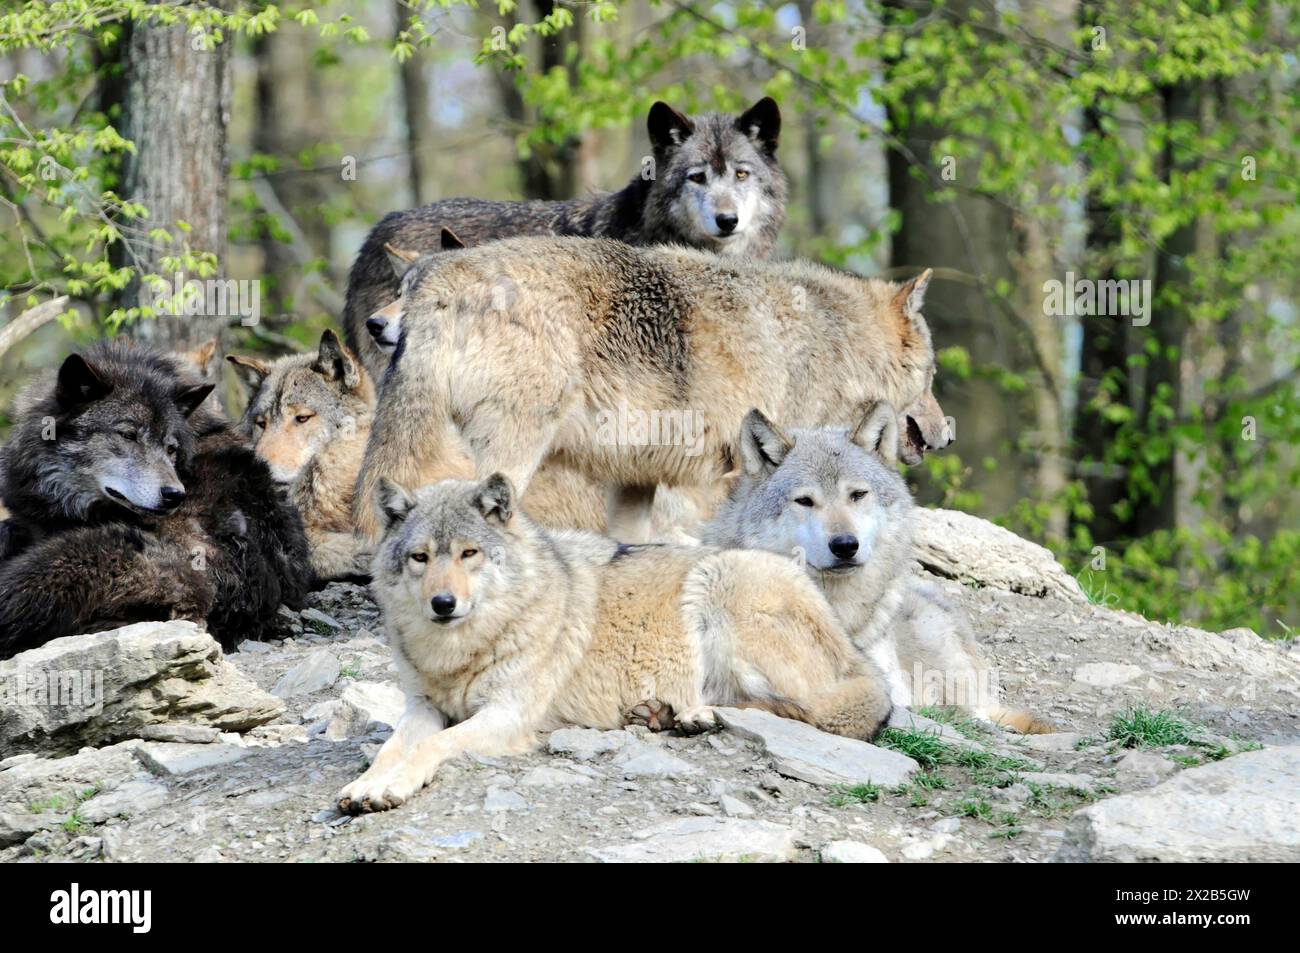 Loup de la vallée du Mackenzie (Canis lupus occidentalis), captif, Allemagne, Europe, meute de loups de différentes couleurs reposant sur et autour d'un rocher, Tierpa Banque D'Images